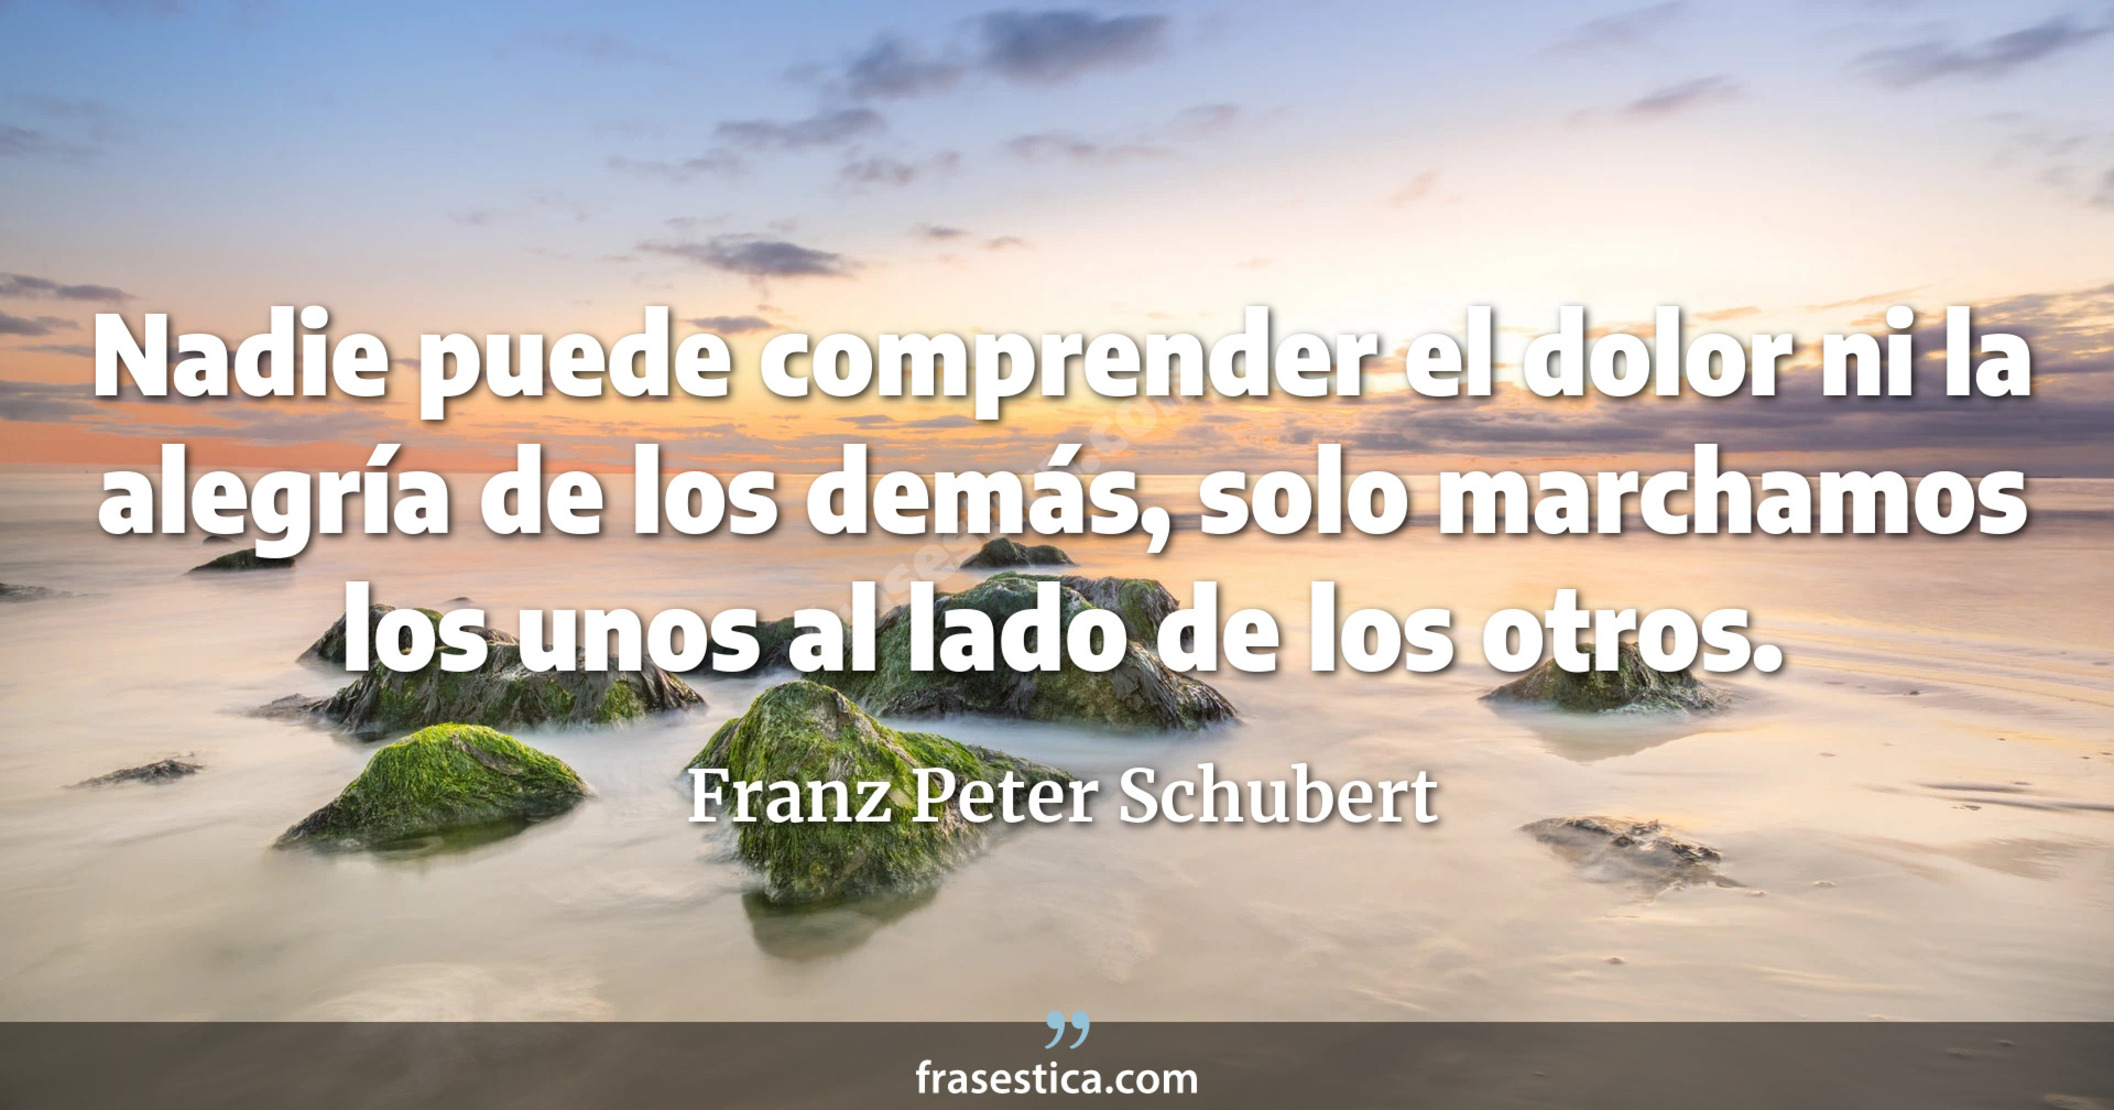 Nadie puede comprender el dolor ni la alegría de los demás, solo marchamos los unos al lado de los otros. - Franz Peter Schubert